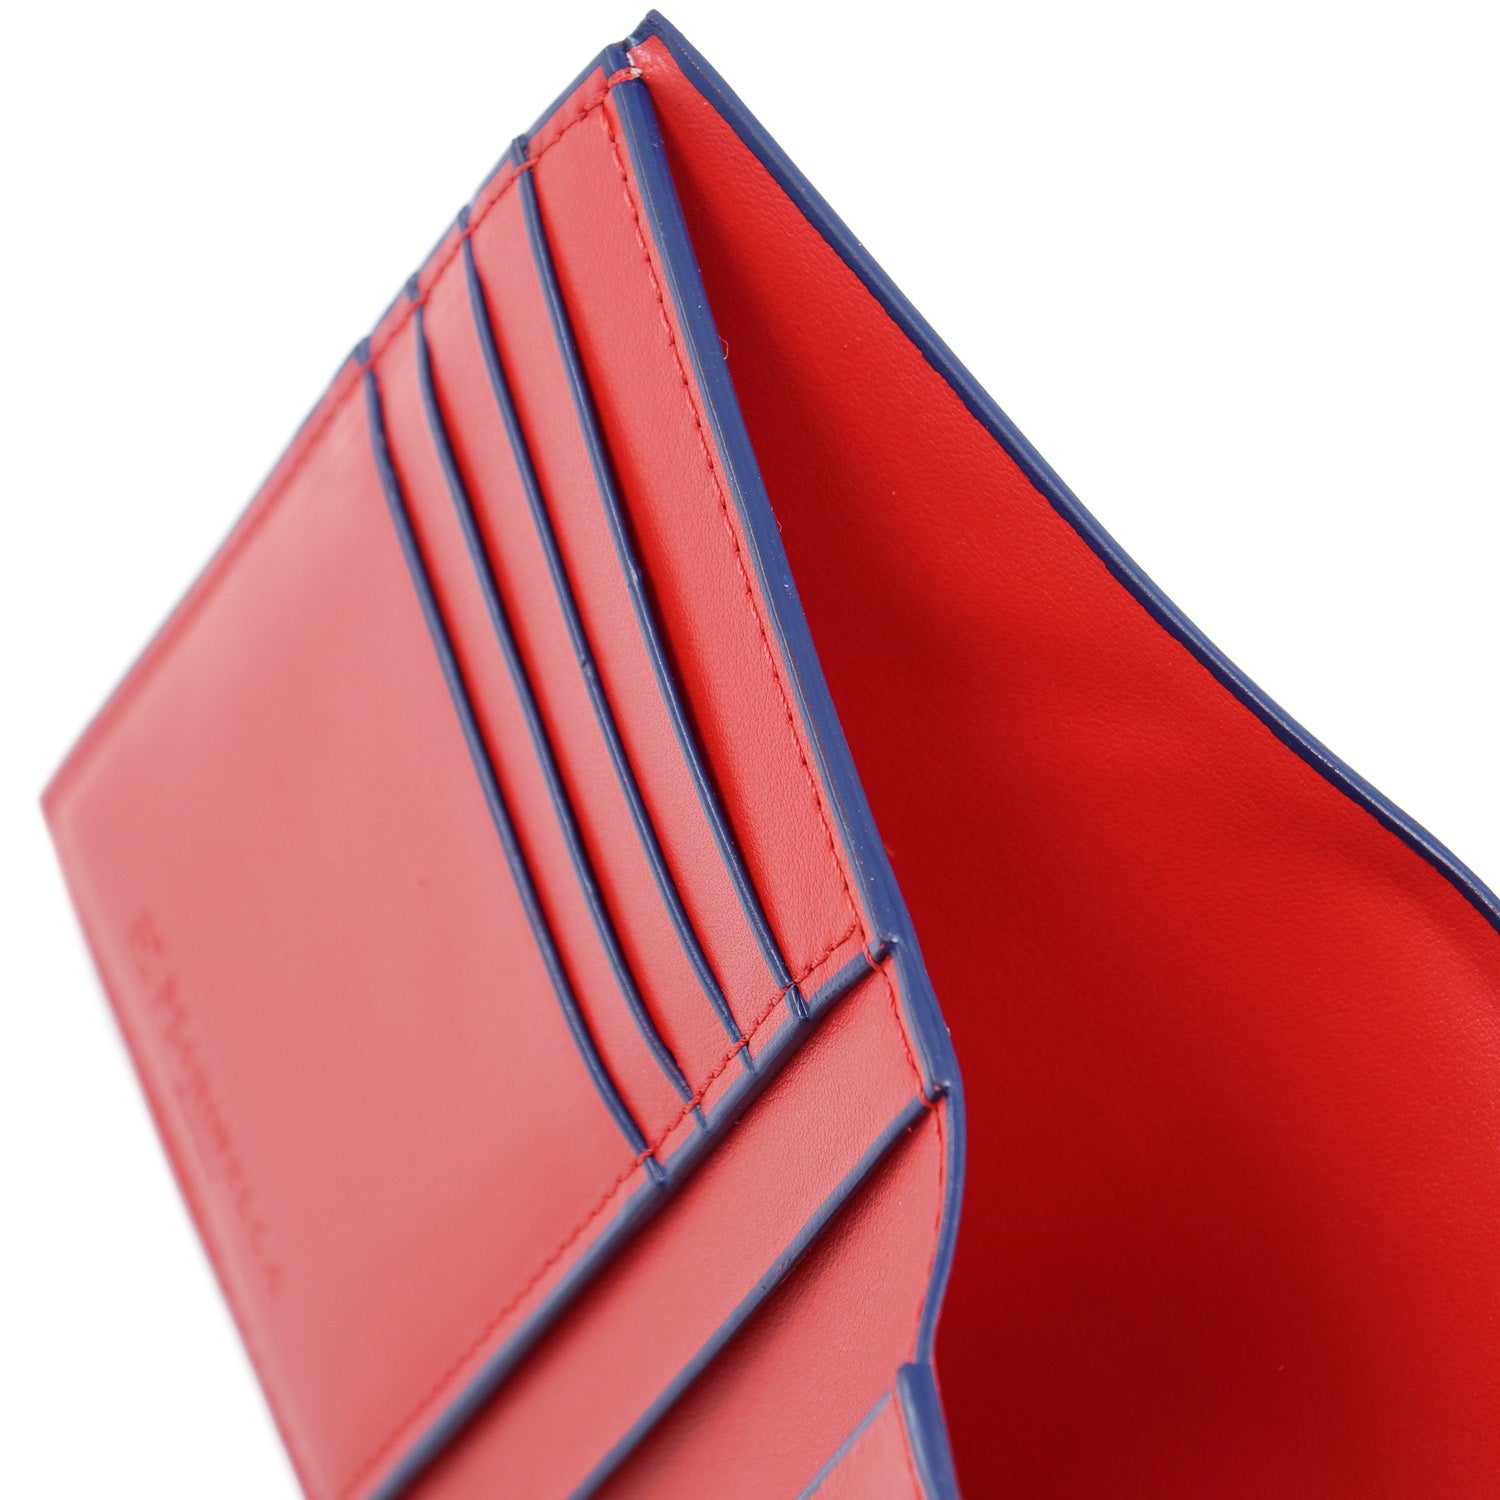 E.Marinella Vertical Wallet in Soft Calfskin - Top Shelf Apparel